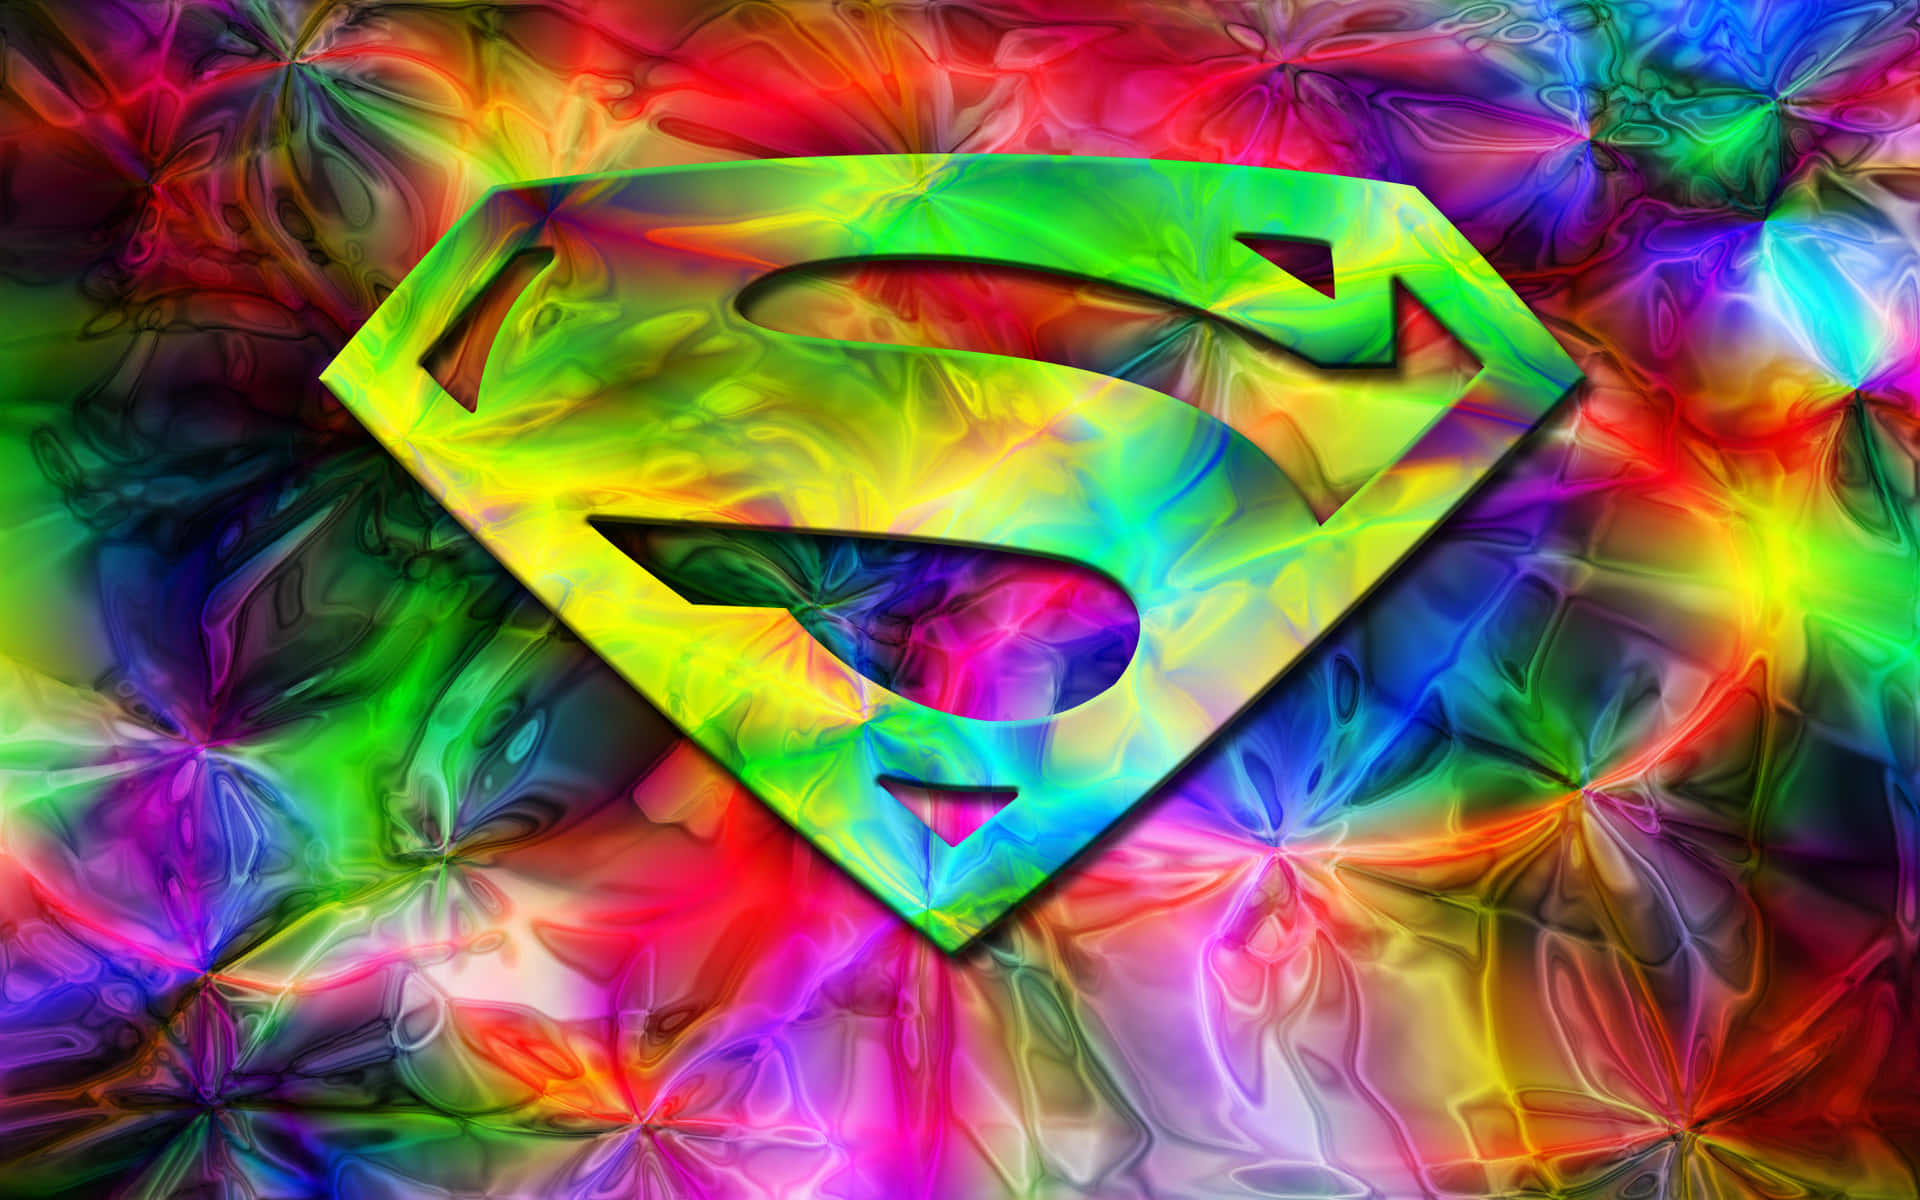 Fantastisk farverigt Superman logo billedtapet